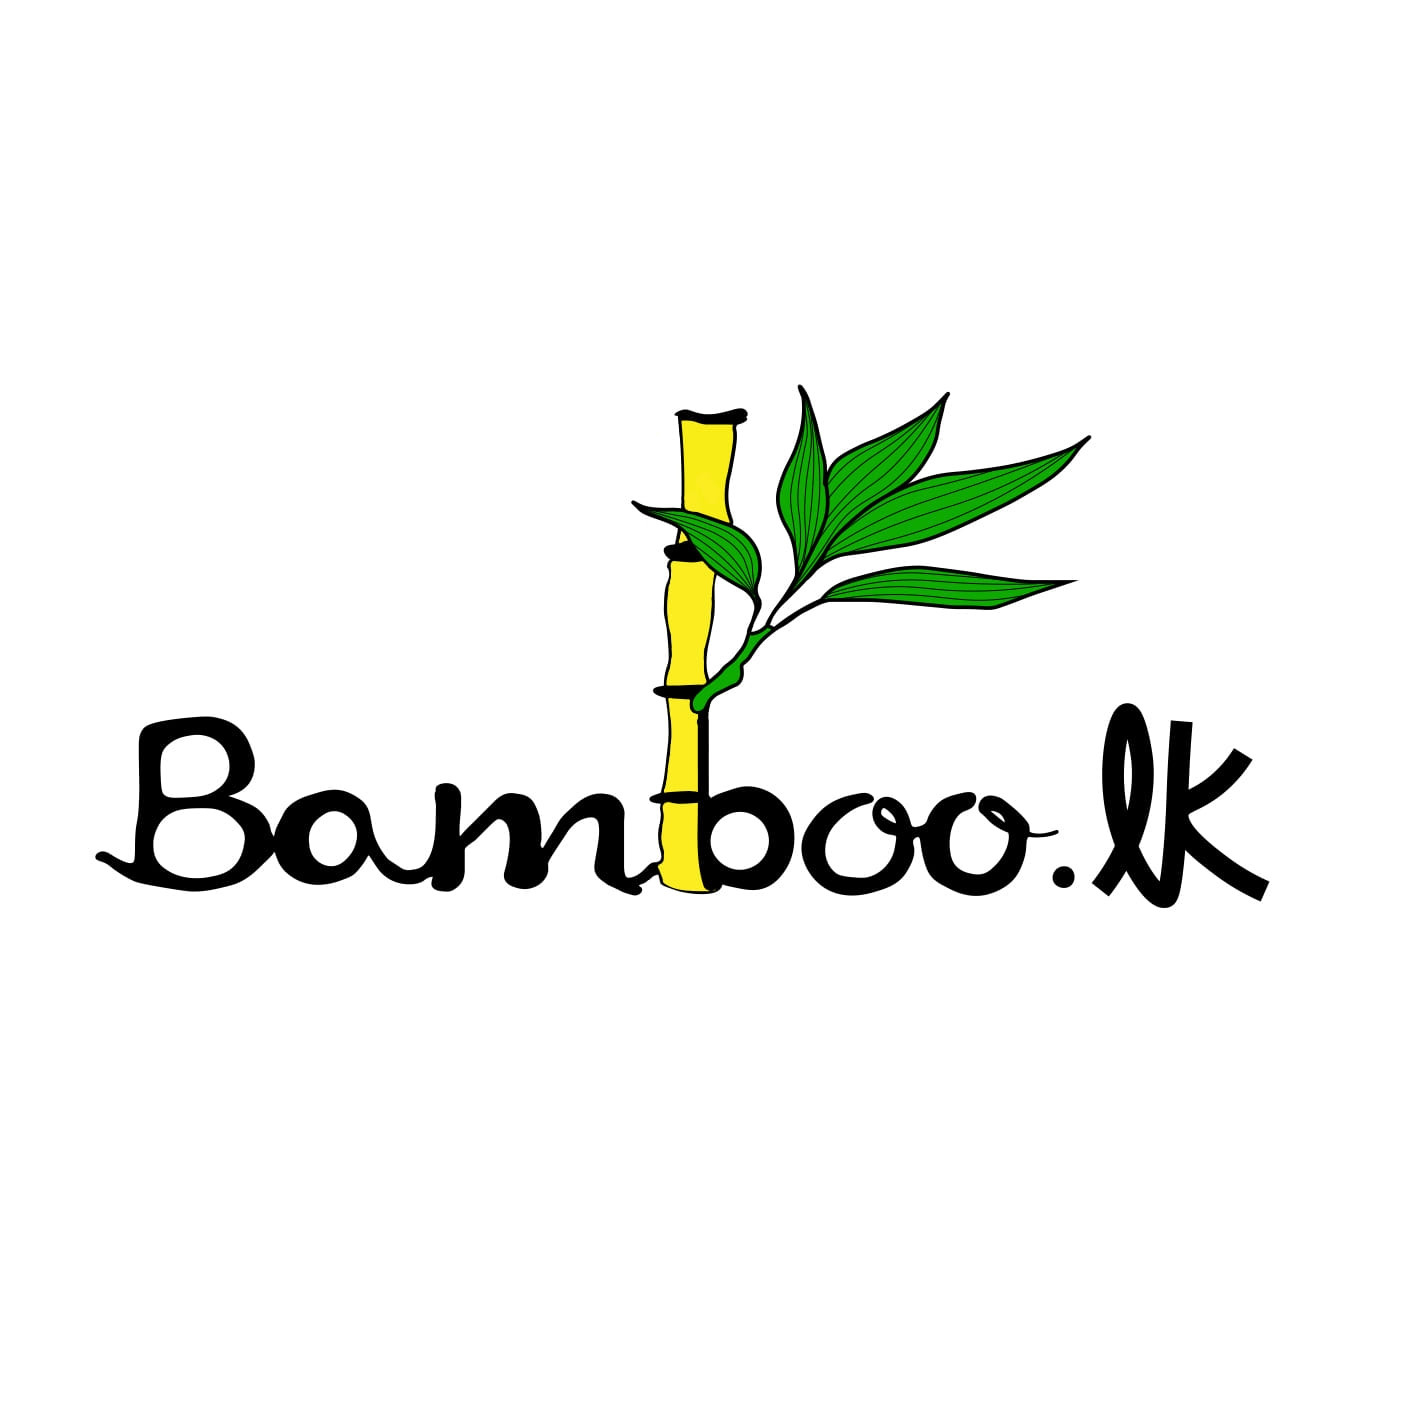 Bamboo.lk